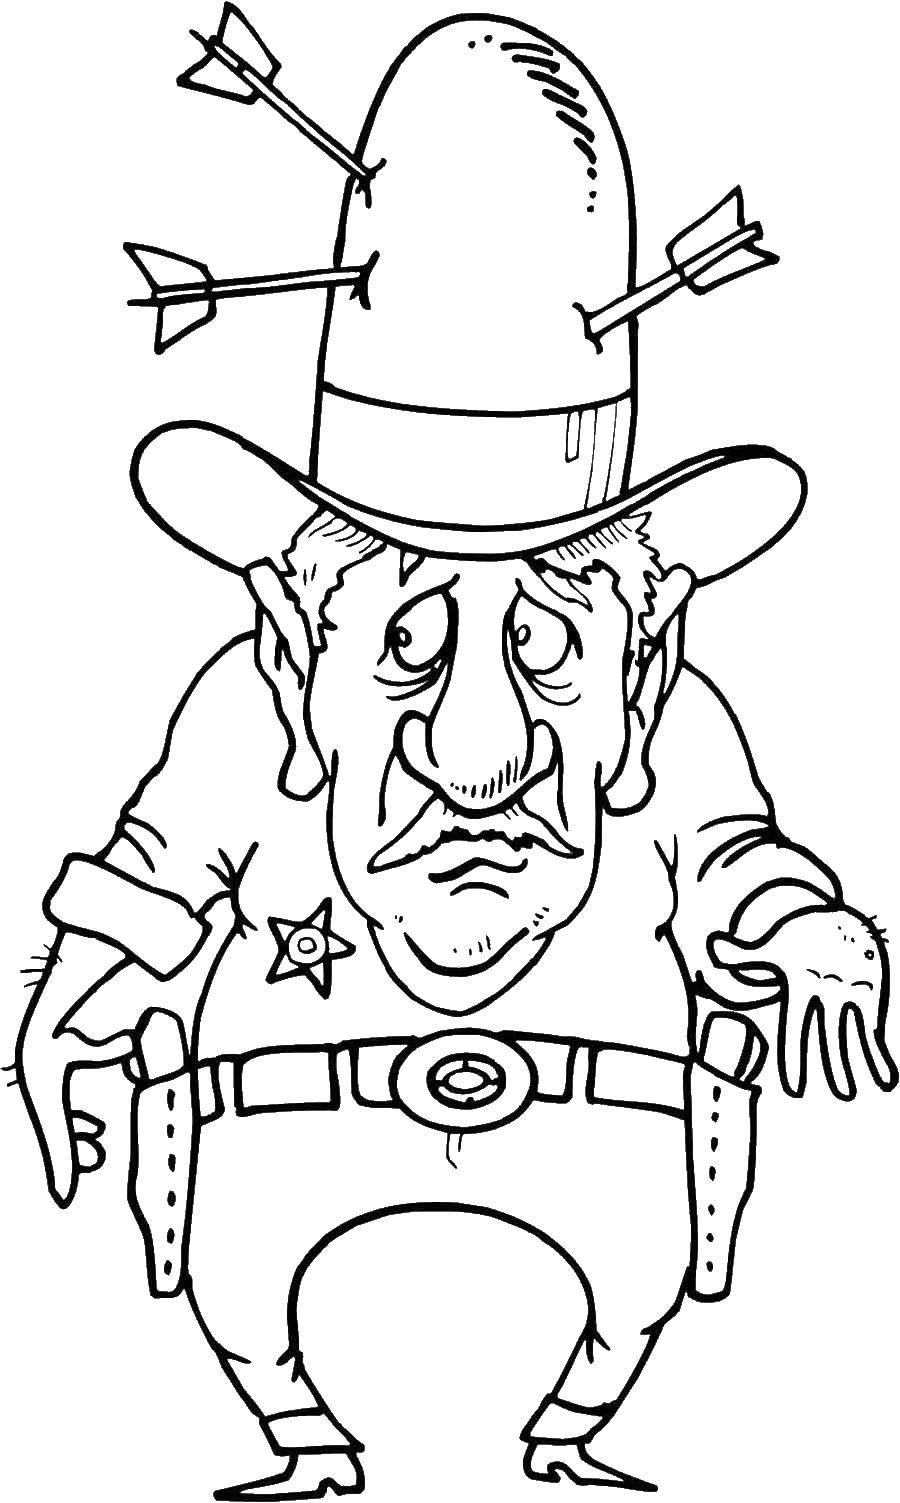 Опис: розмальовки  Шериф з капелюхом. Категорія: розмальовки. Теги:  шериф, значок, капелюх.